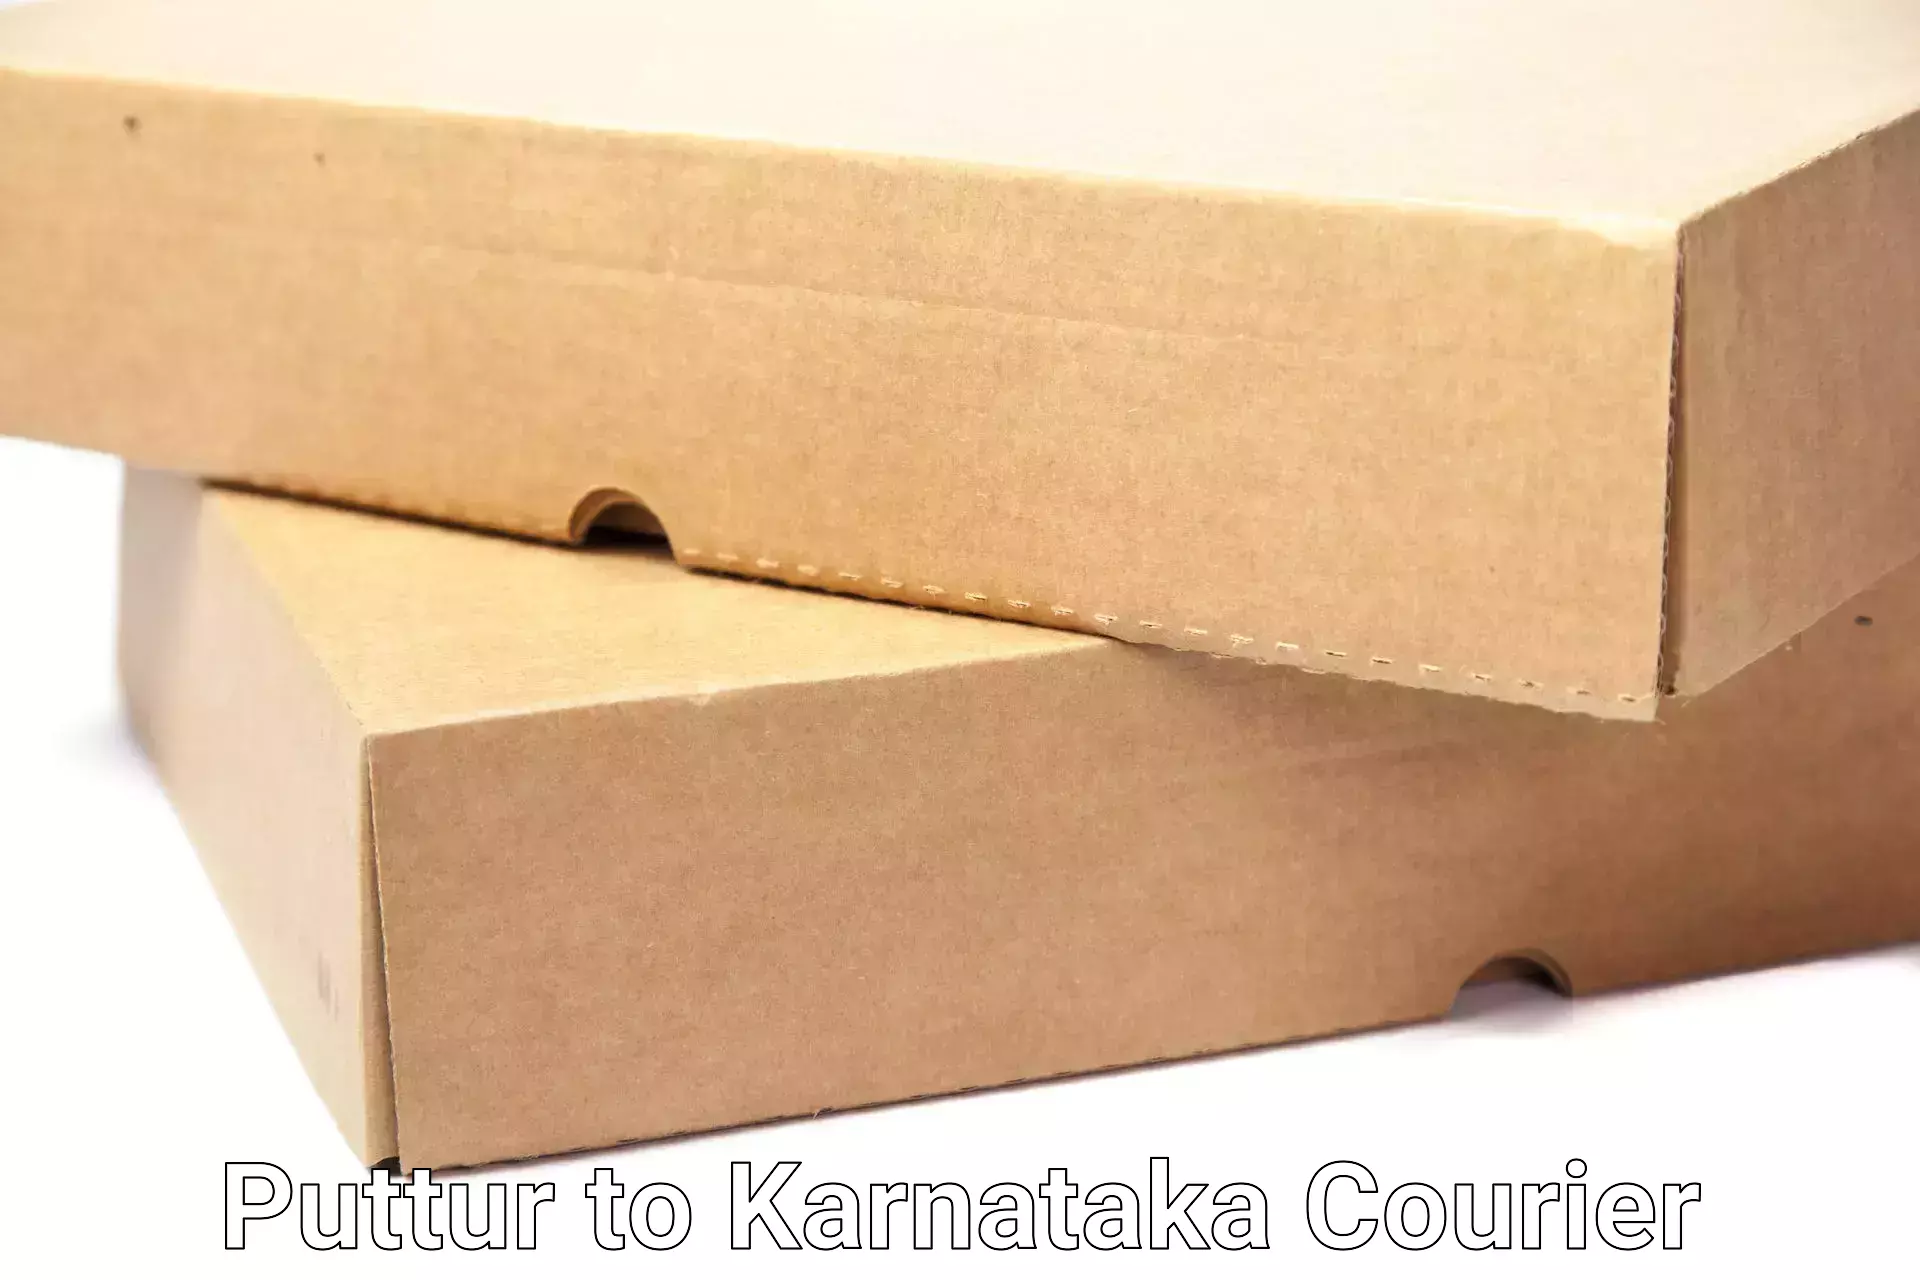 Furniture transport and logistics Puttur to Kalaburagi